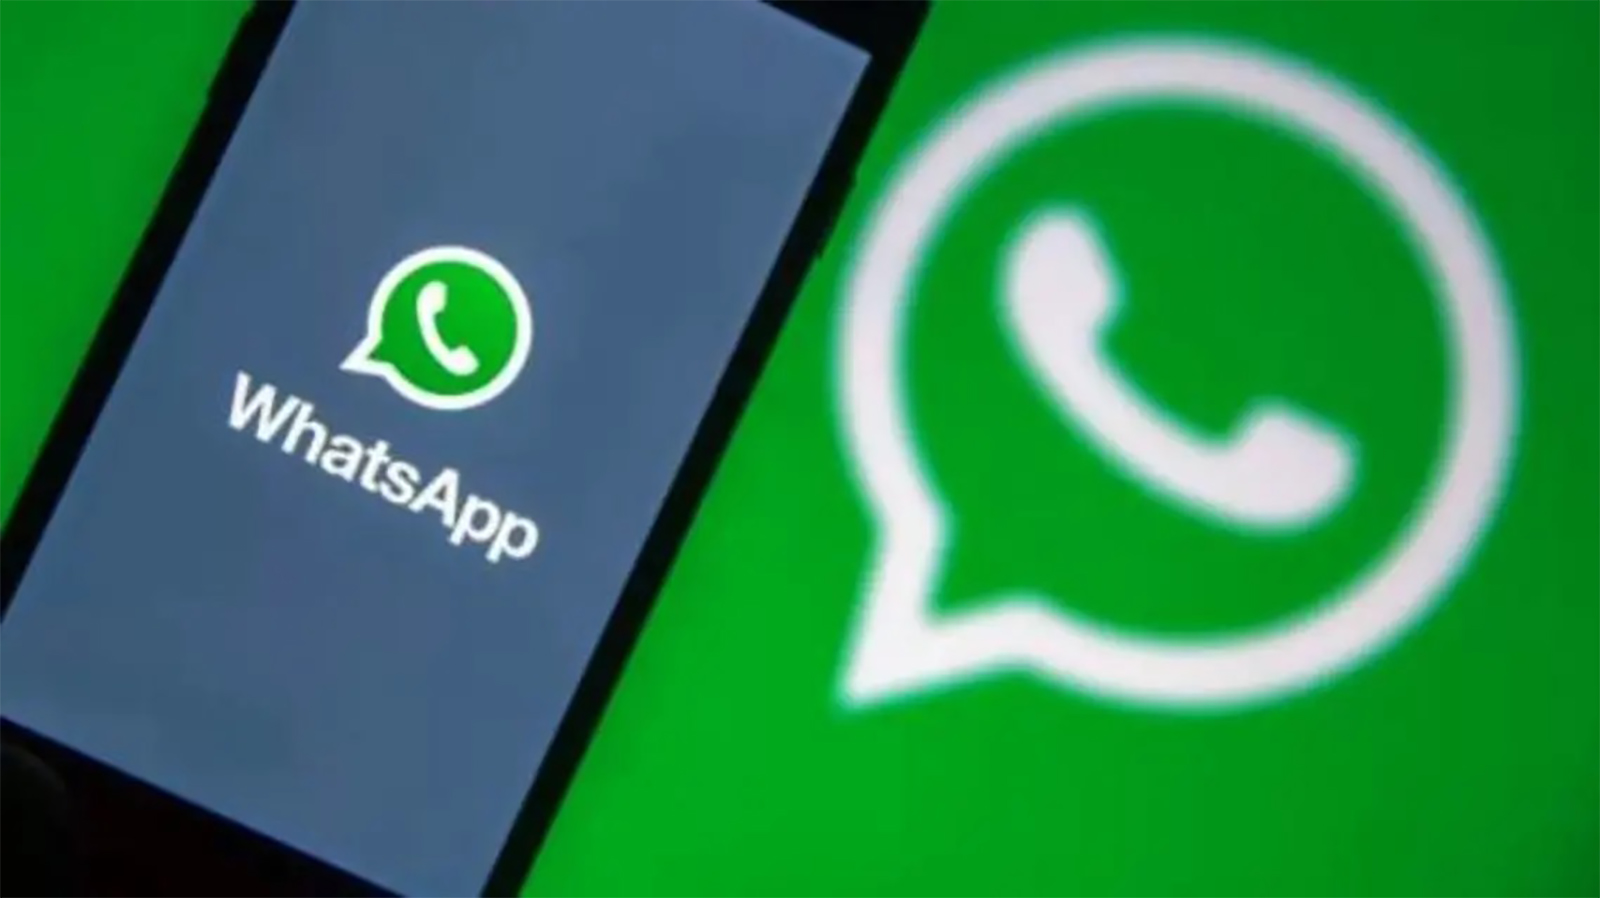 شرح طريقة استخدام واتس اب ويب WhatsApp Web